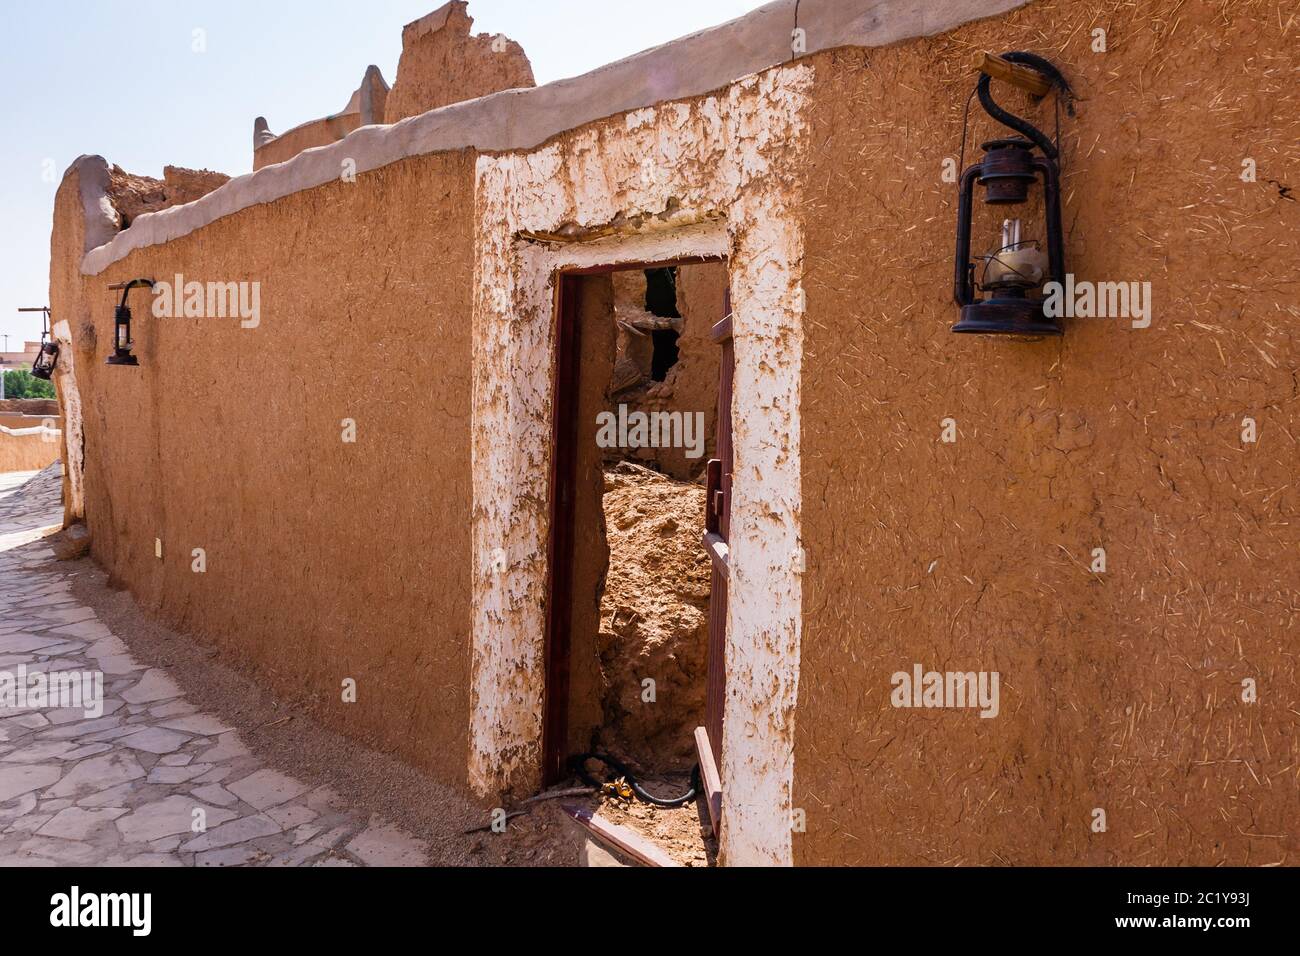 La tradizionale architettura araba in mattoni di fango, Arabia Saudita Foto Stock